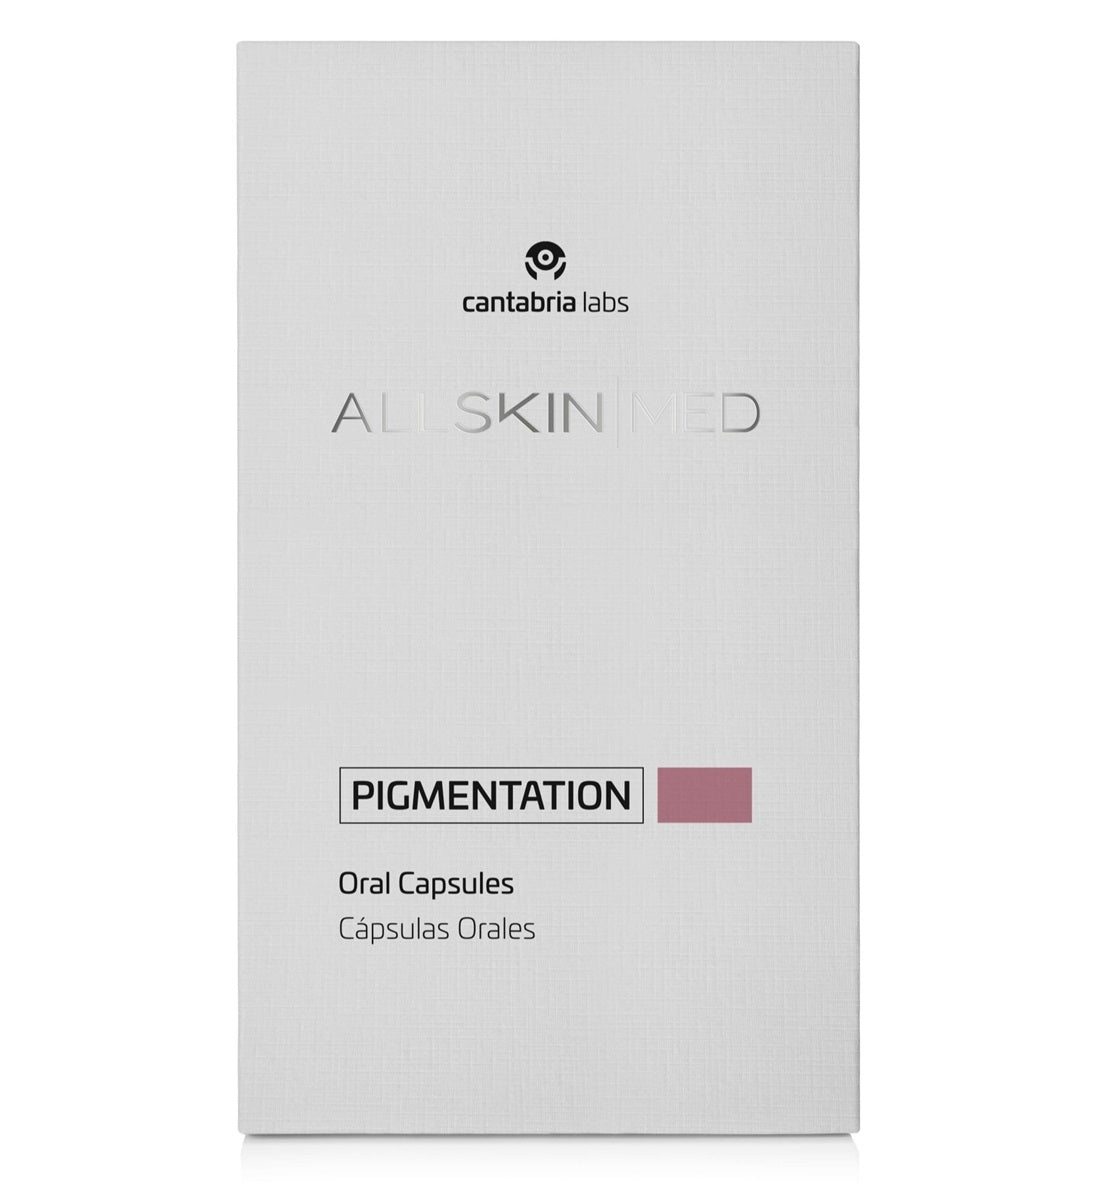 All Skin Med Pigmentation Capsulas Pigment Control (60 capsulas)